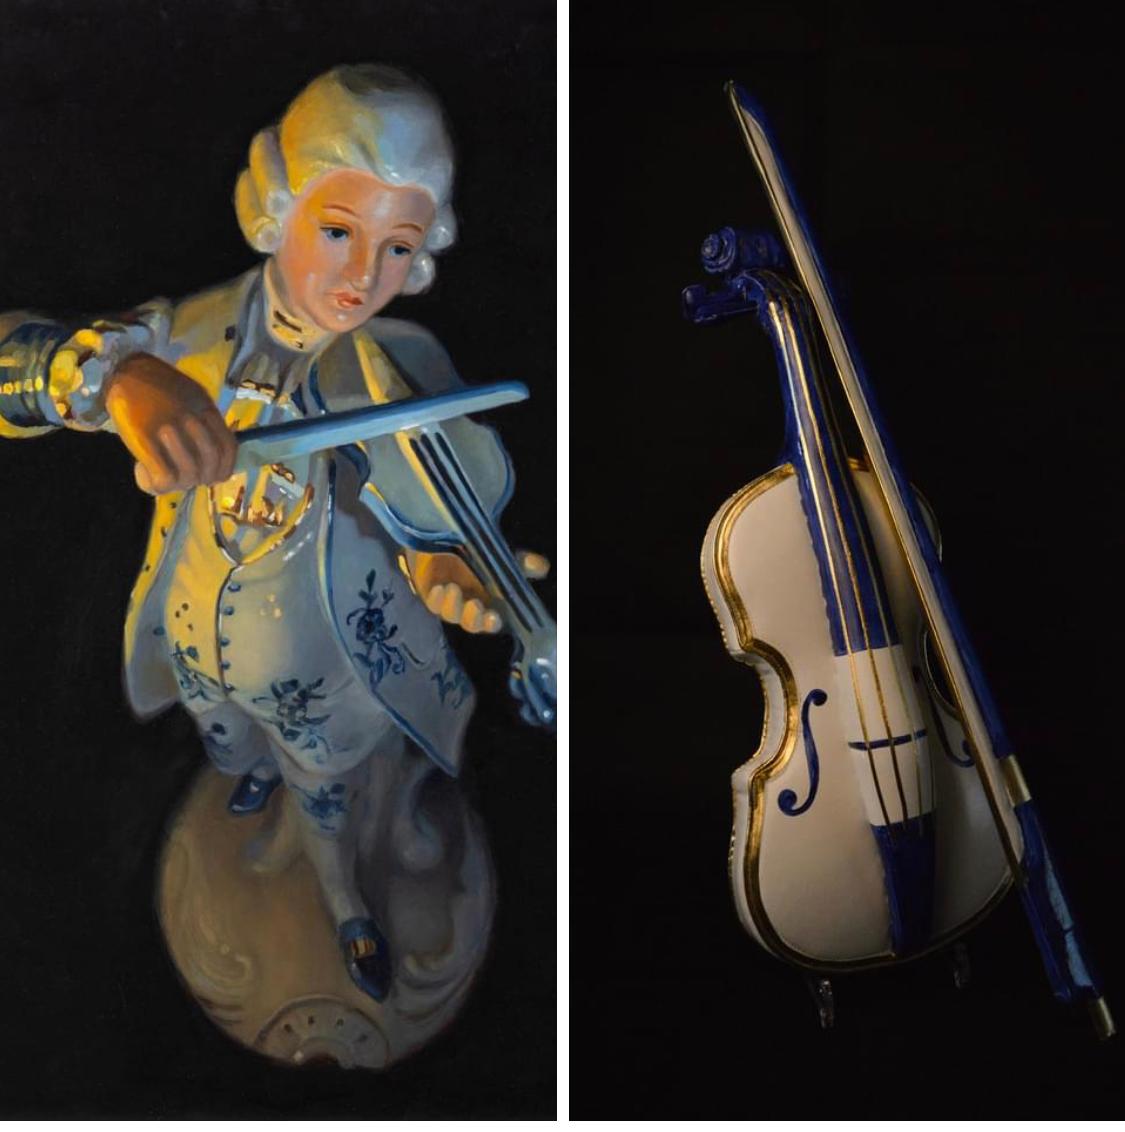 Serenade silencieuse - Peinture Stlllife du 21e siècle représentant une figurine jouant du violon - Painting de Astrid Ritmeester